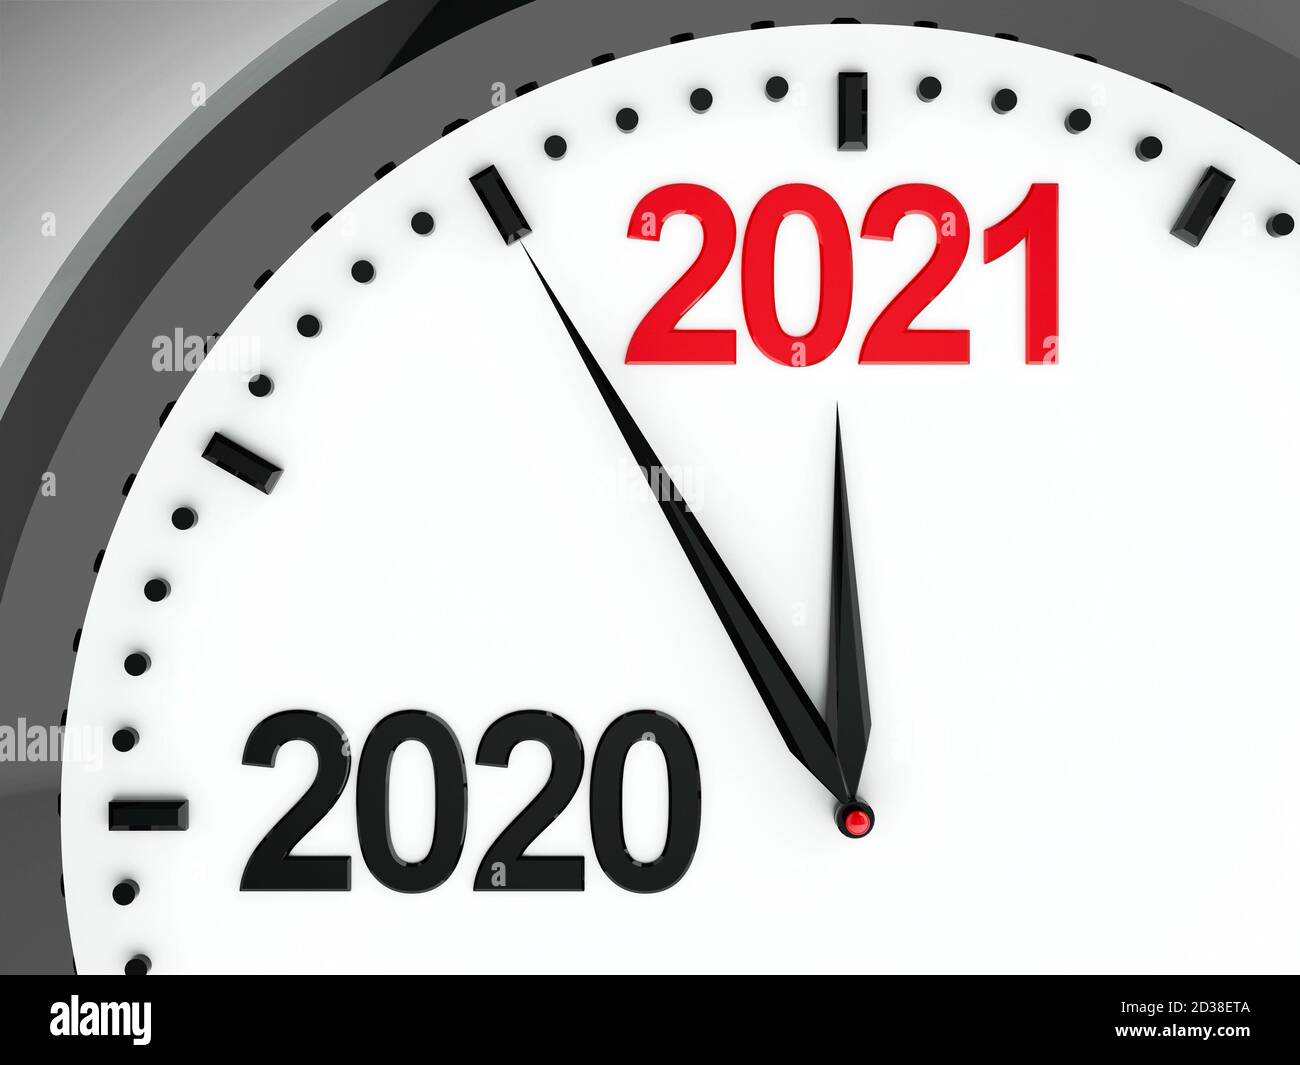 Schwarze Uhr mit 2020-2021 Änderung stellt kommendes neues Jahr 2021, dreidimensionales Rendering, 3D-Illustration dar Stockfoto